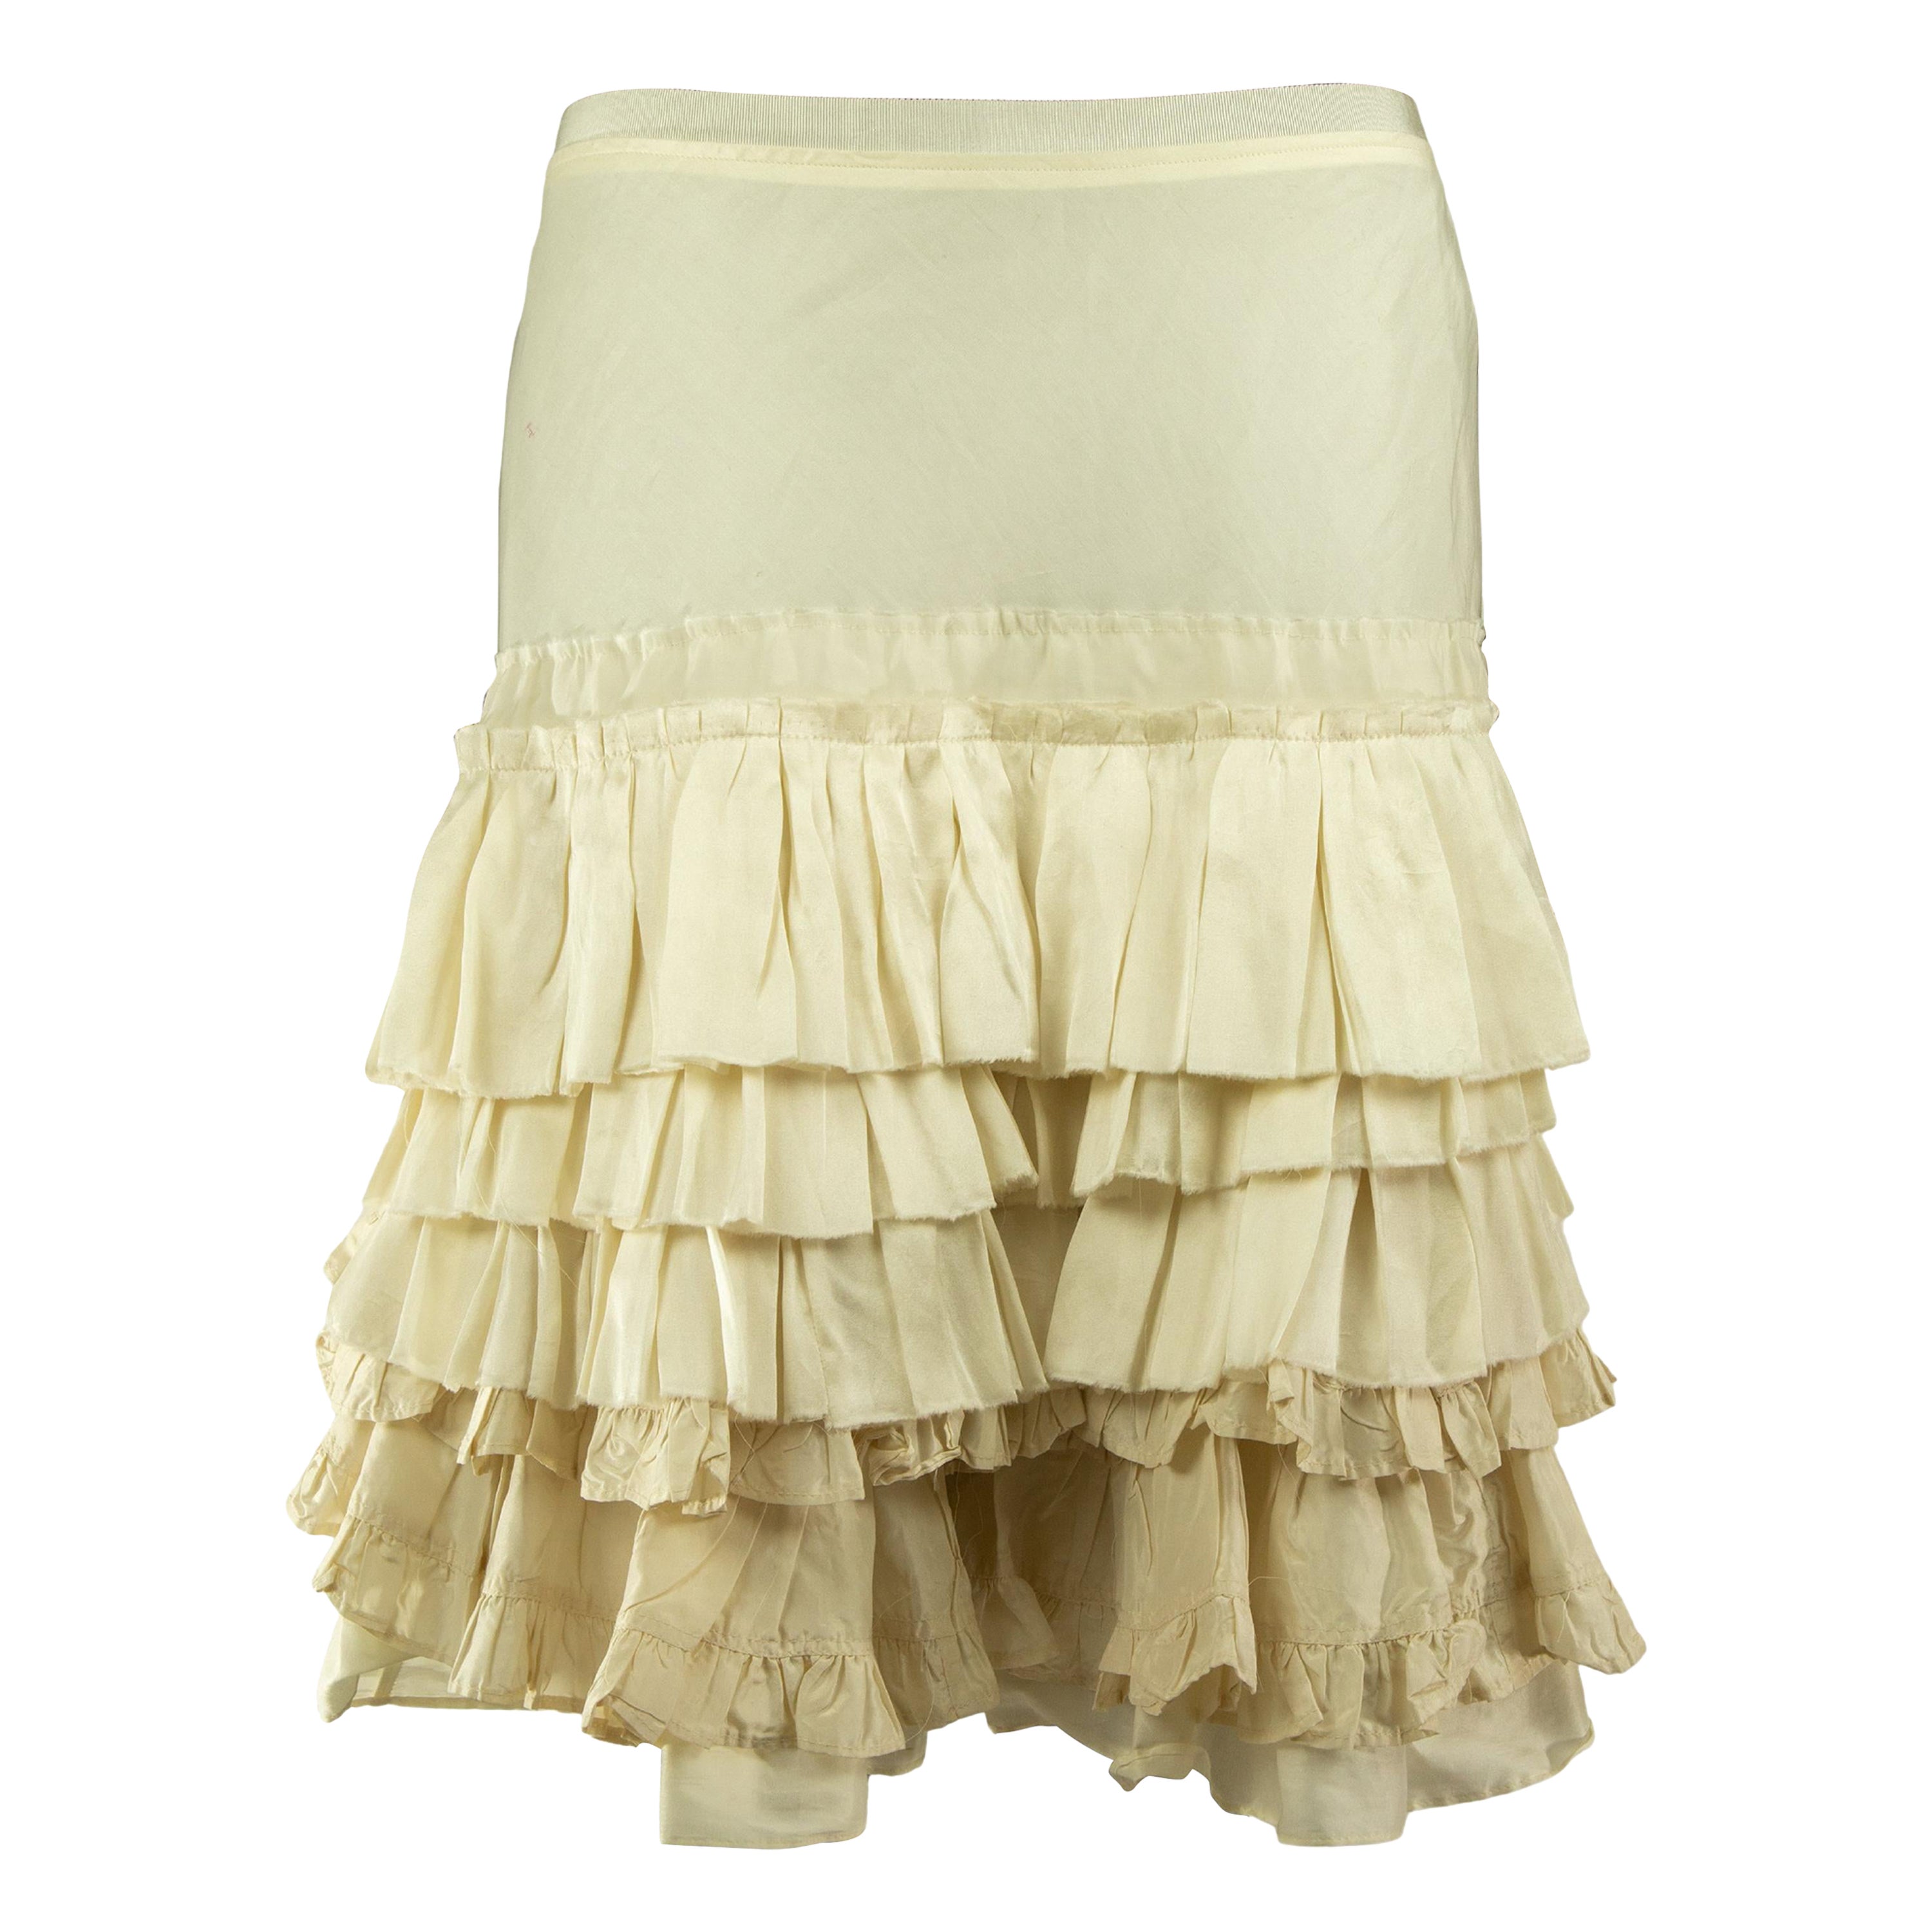 Mid 2000s Chloé Pearl White Ruffled Skirt